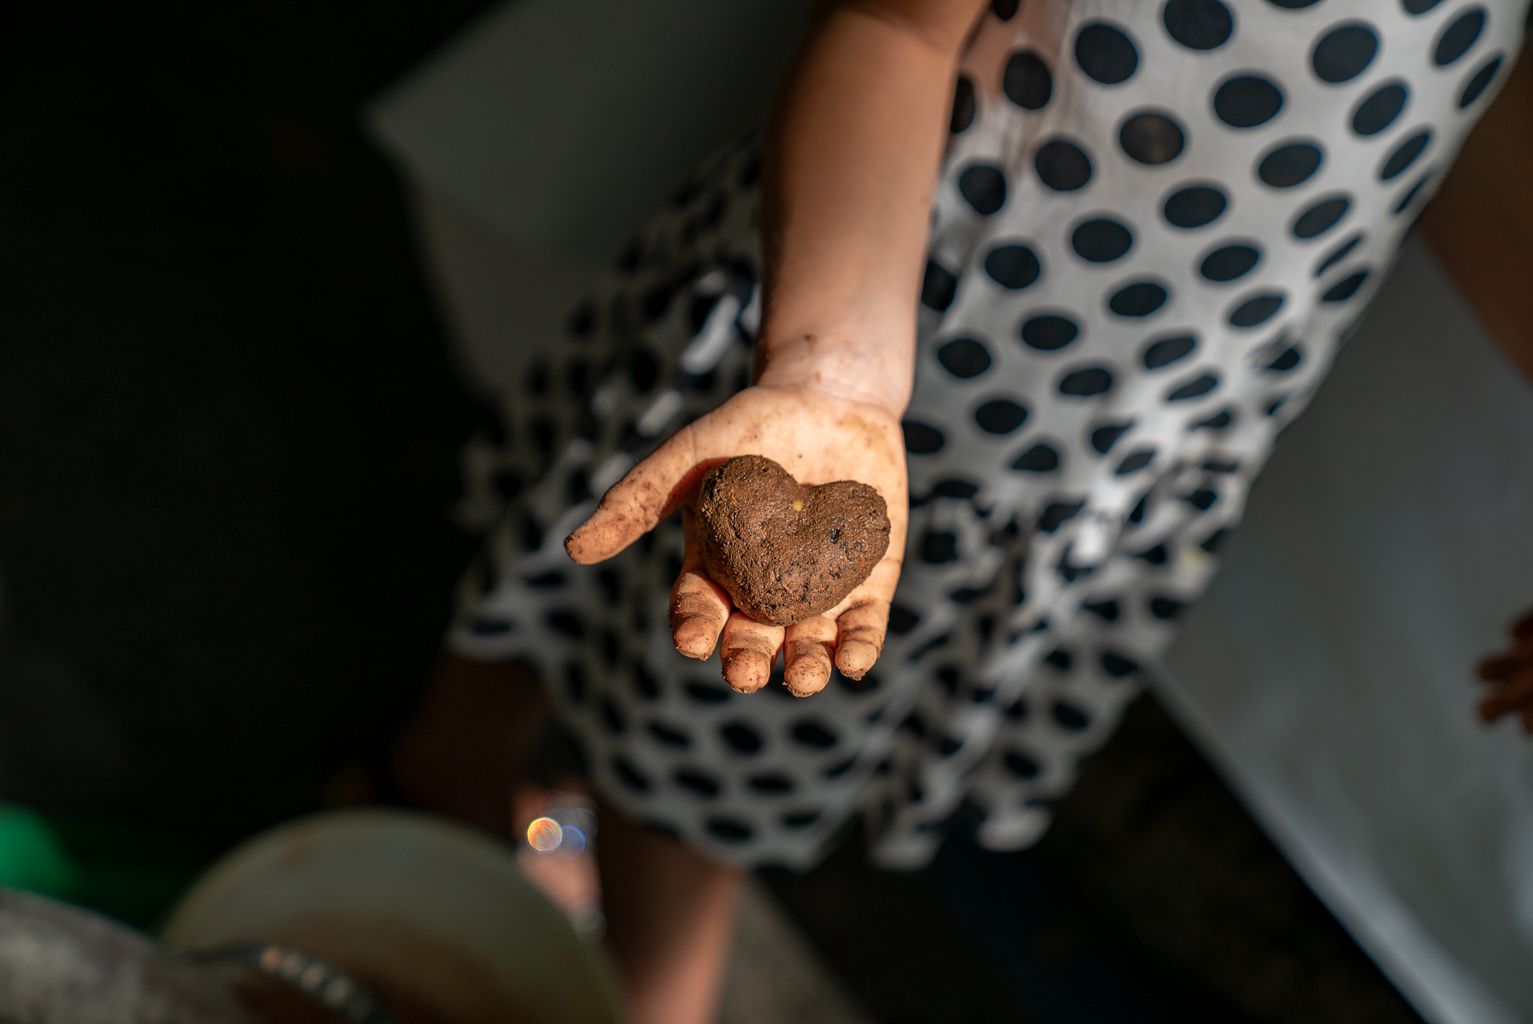 Una niña muestra un corazón hecho con barro, abono y una mezcla de semillas de plantas aromáticas y comestibles realizada en el taller “Hacemos bolitas de semillas: nenodango”, de la Fiesta Mayor de Gràcia